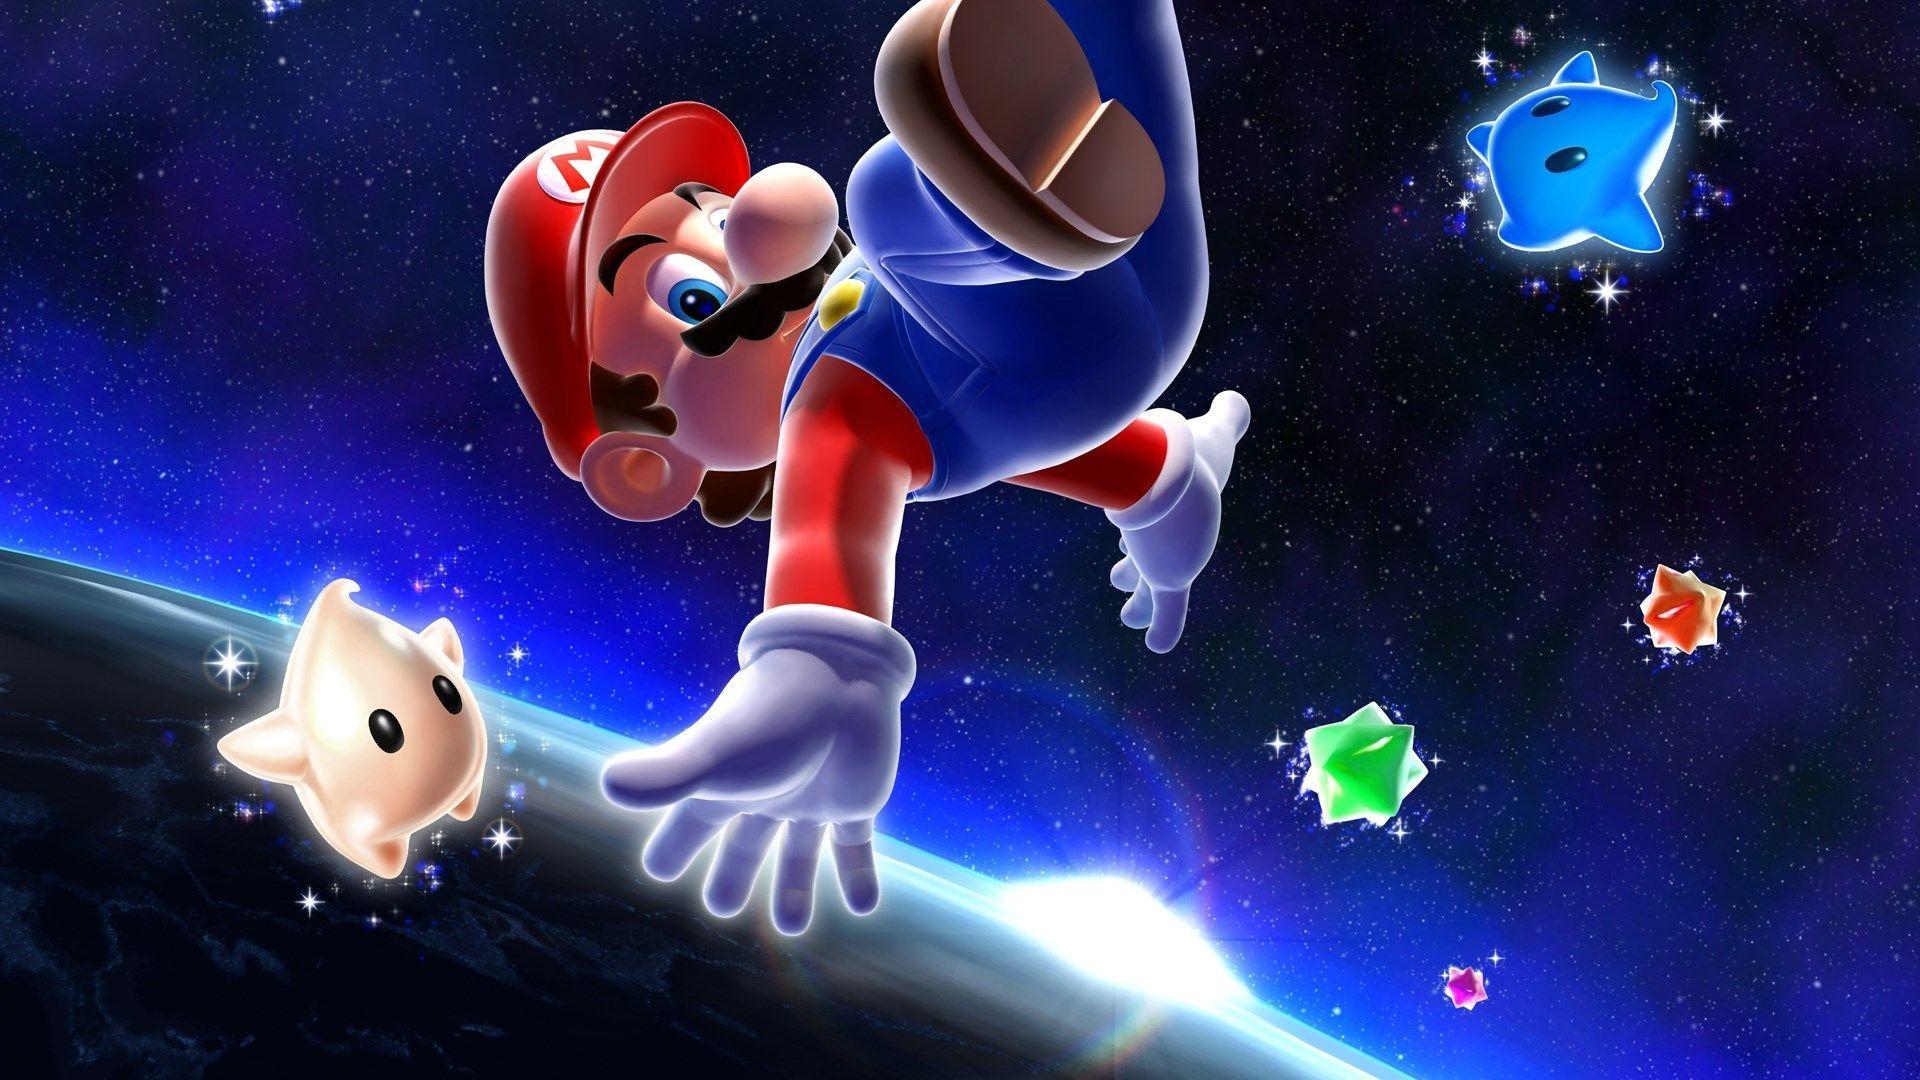 Bạn muốn tìm kiếm một hình nền Super Mario Galaxy độc đáo và ấn tượng để trang trí cho chiếc máy tính của mình? Đến với chúng tôi tại Wallpaper Cave, chúng tôi cung cấp những hình nền Siêu Sao Mario Galaxy tuyệt vời nhất để bạn lựa chọn.